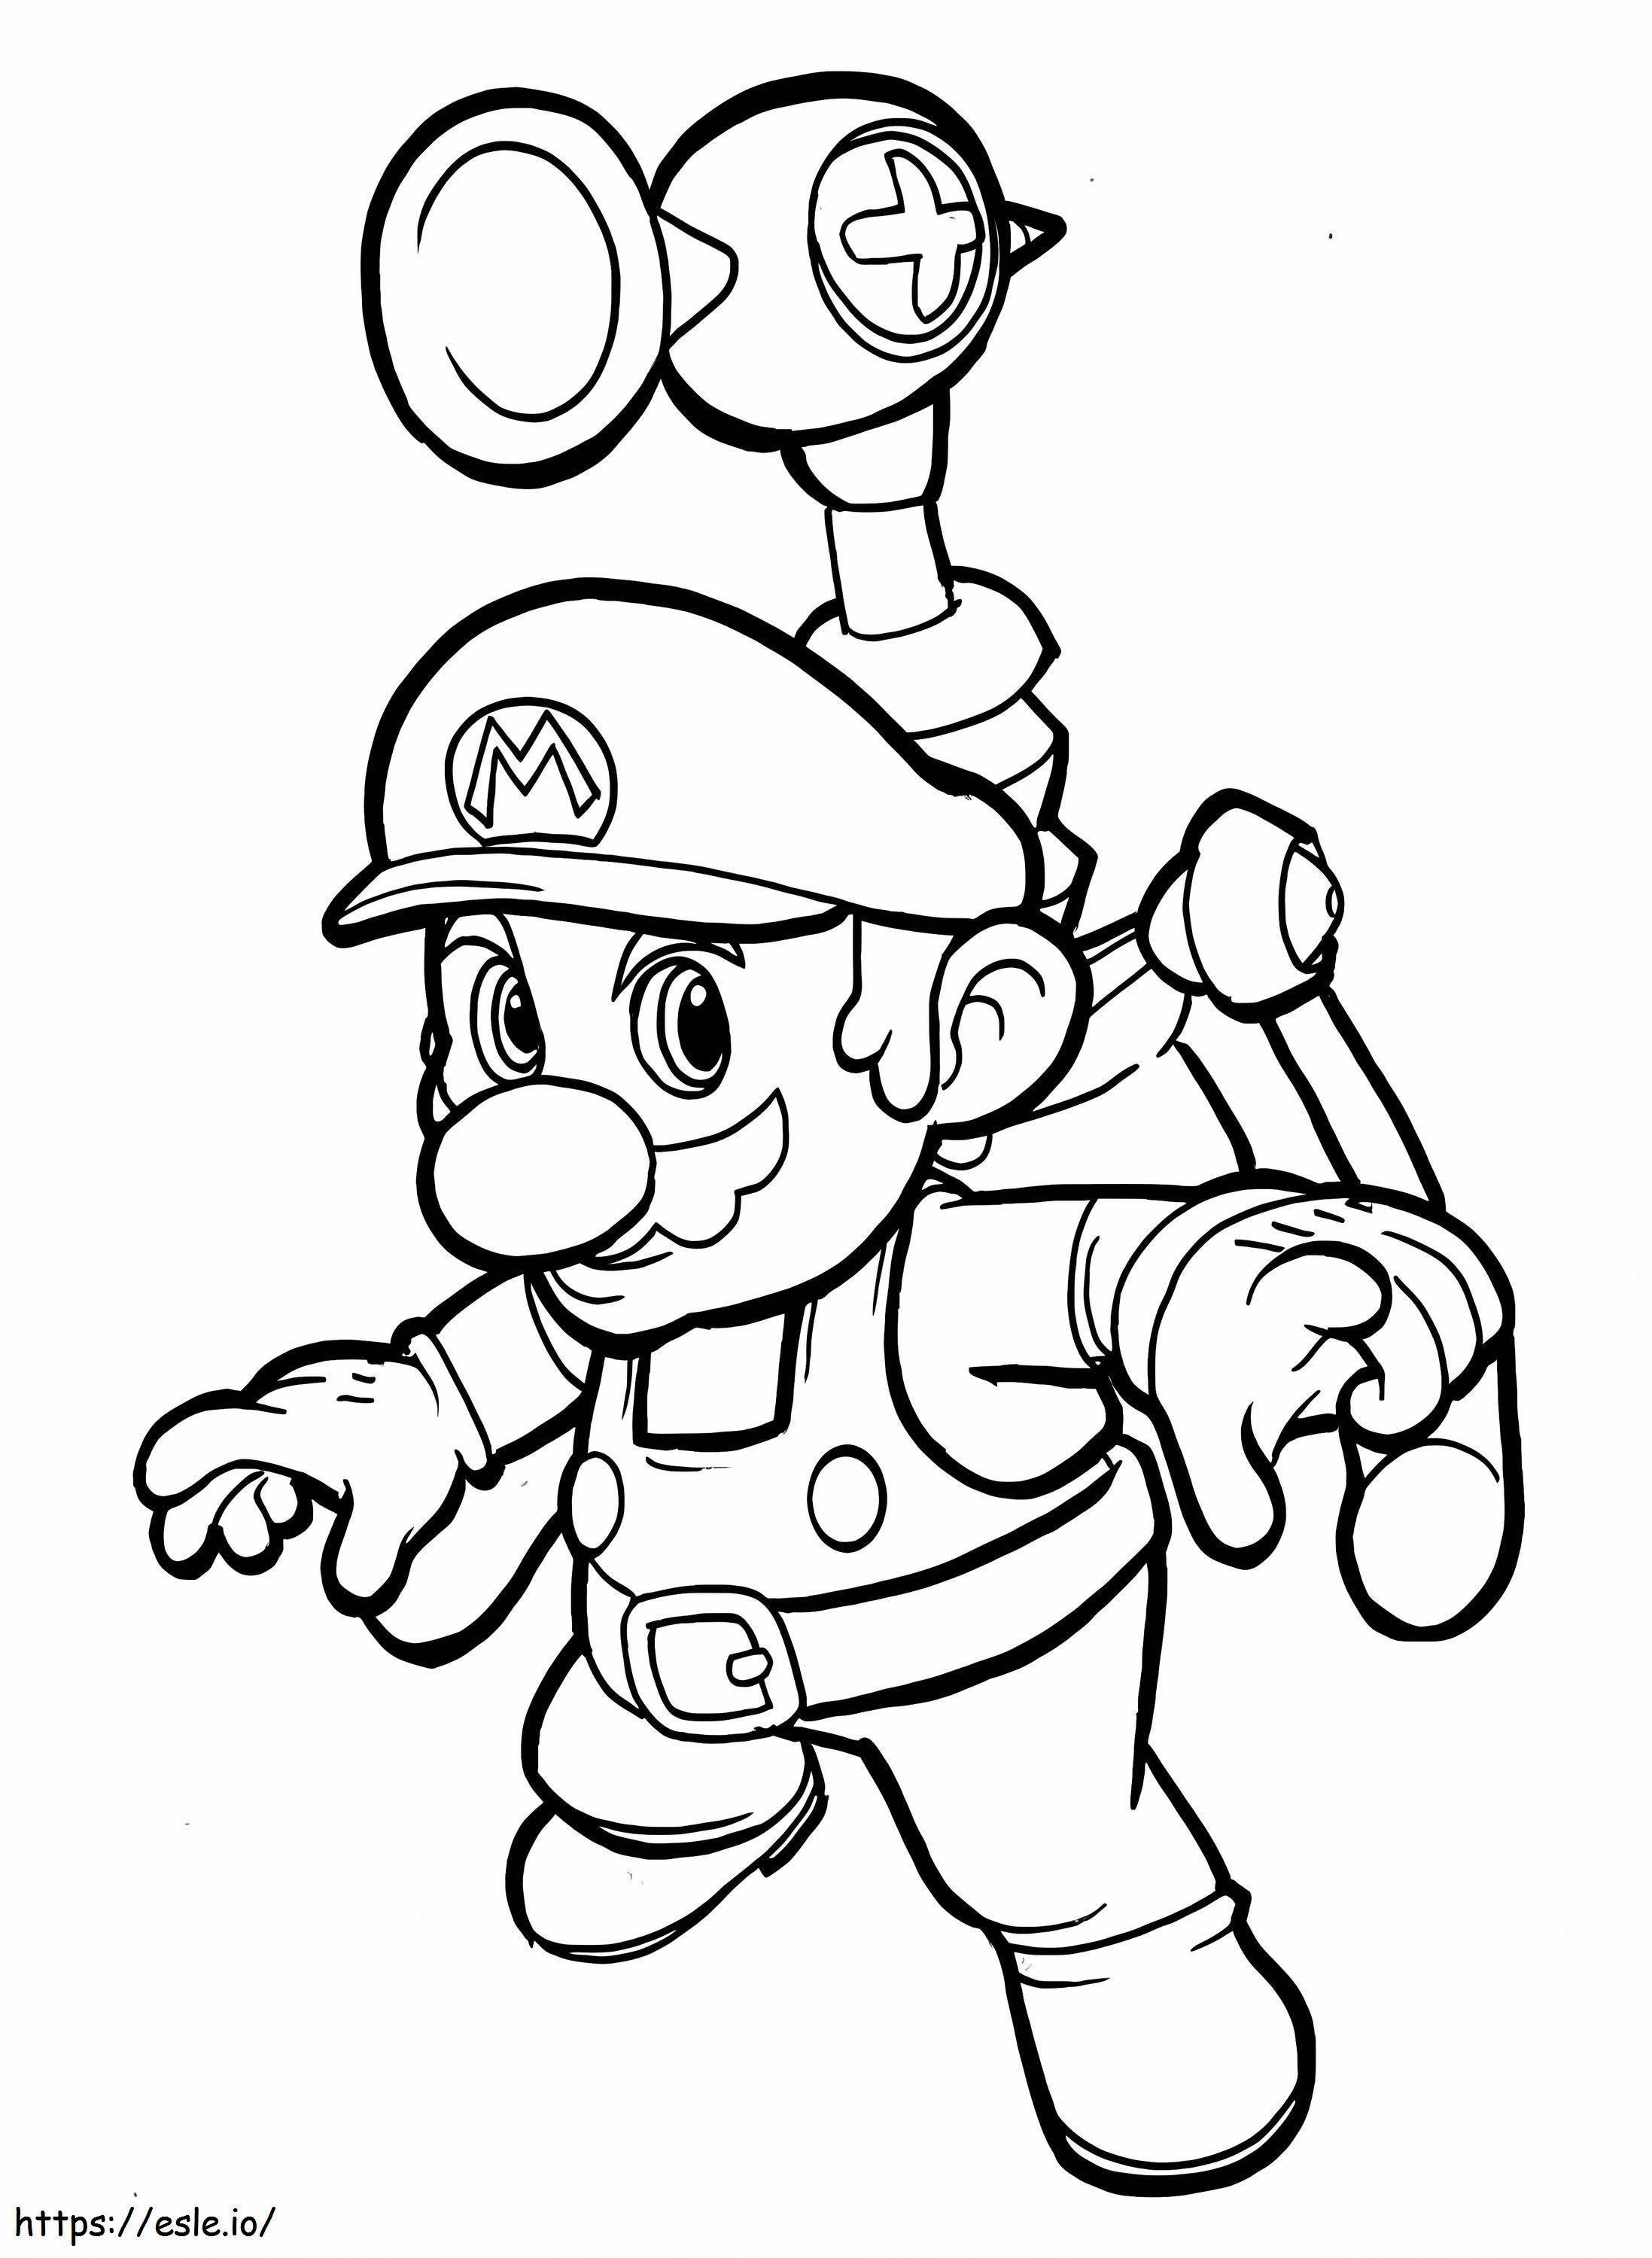 Big Mario coloring page